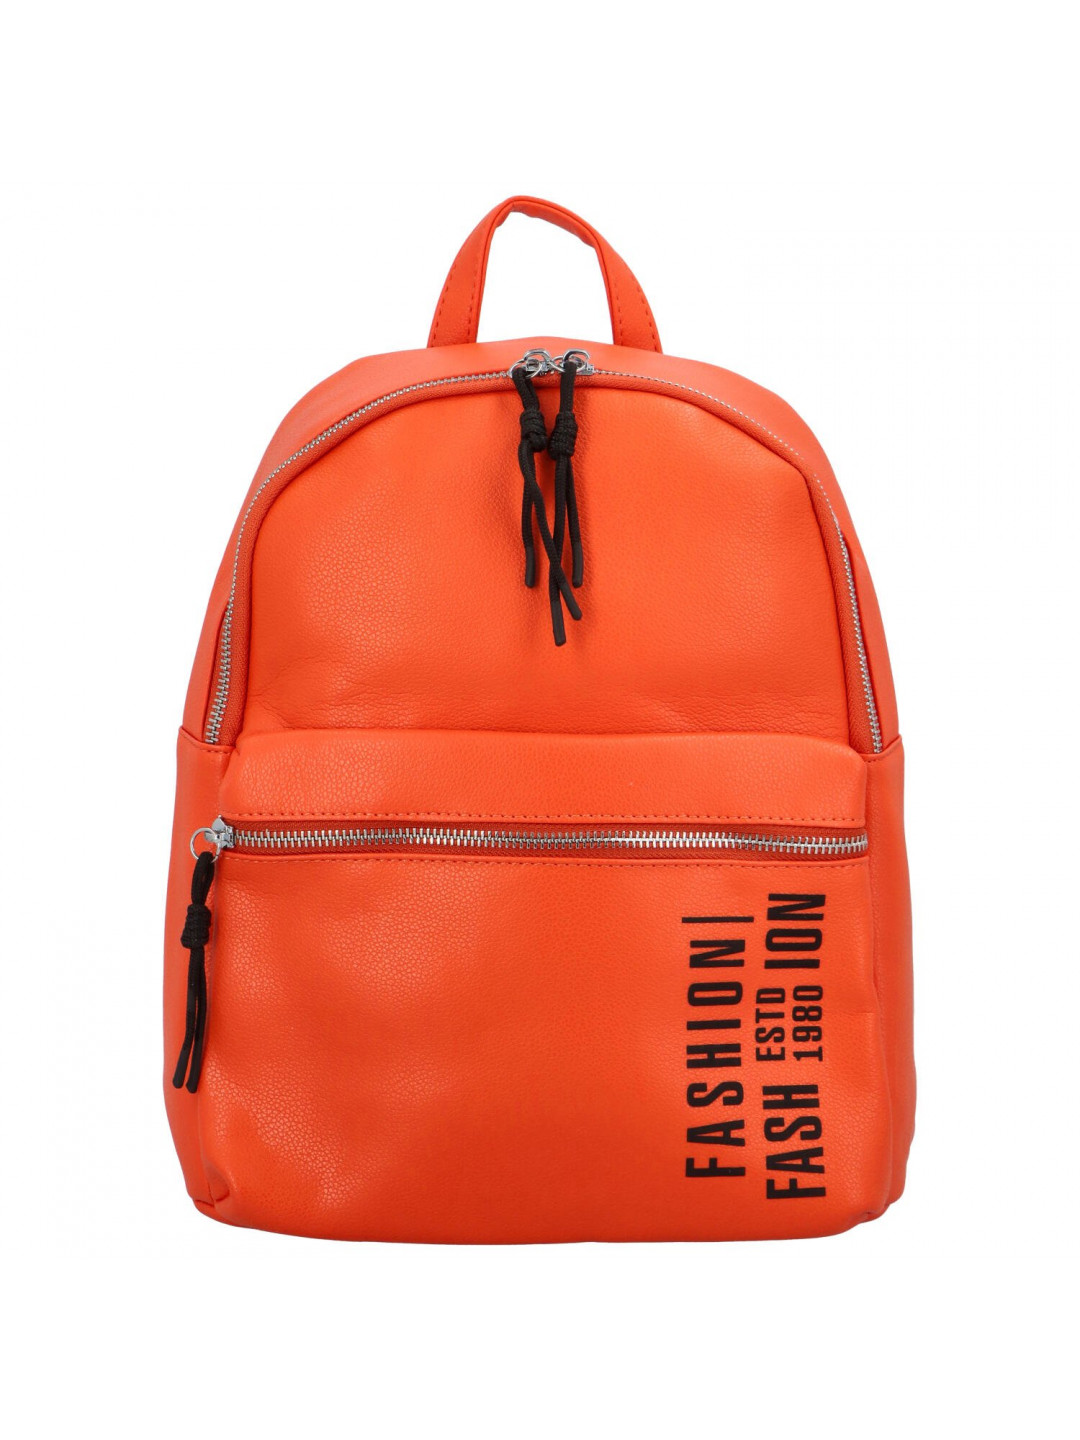 Trendový dámský koženkový batoh s potiskem Lia oranžový